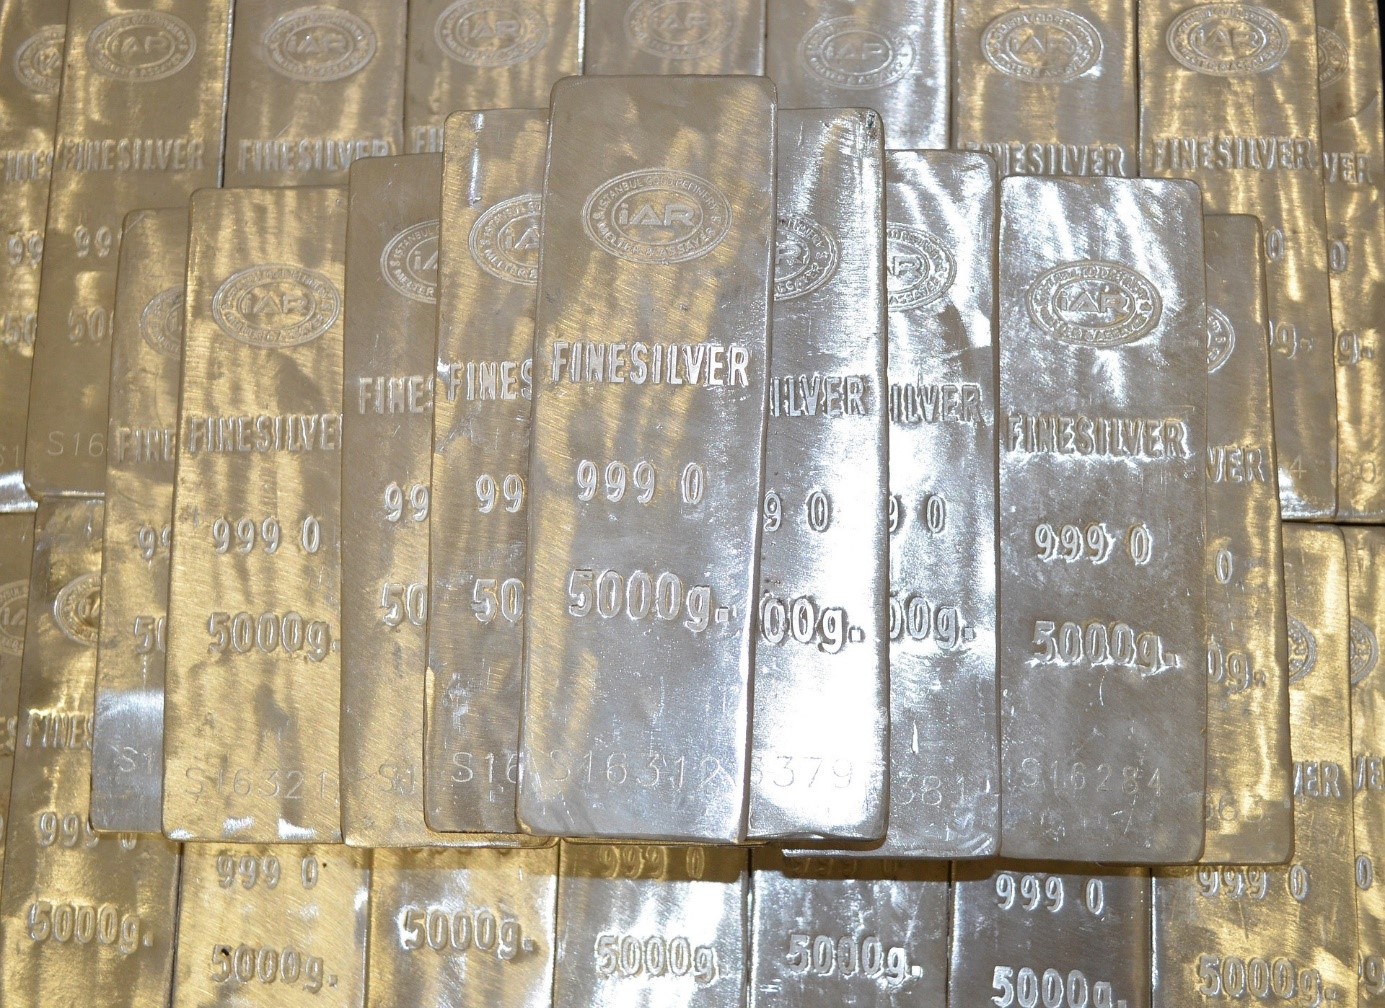 Silver är en råvara av ädelmetall som används i stor utsträckning som ett skydd mot inflation eller som en fristad. Upptäck hur du startar silverhandel, inklusive vad som påverkar silvervärdet och hur du börjar handla med silver, med silverterminer, spotpriser och aktier.